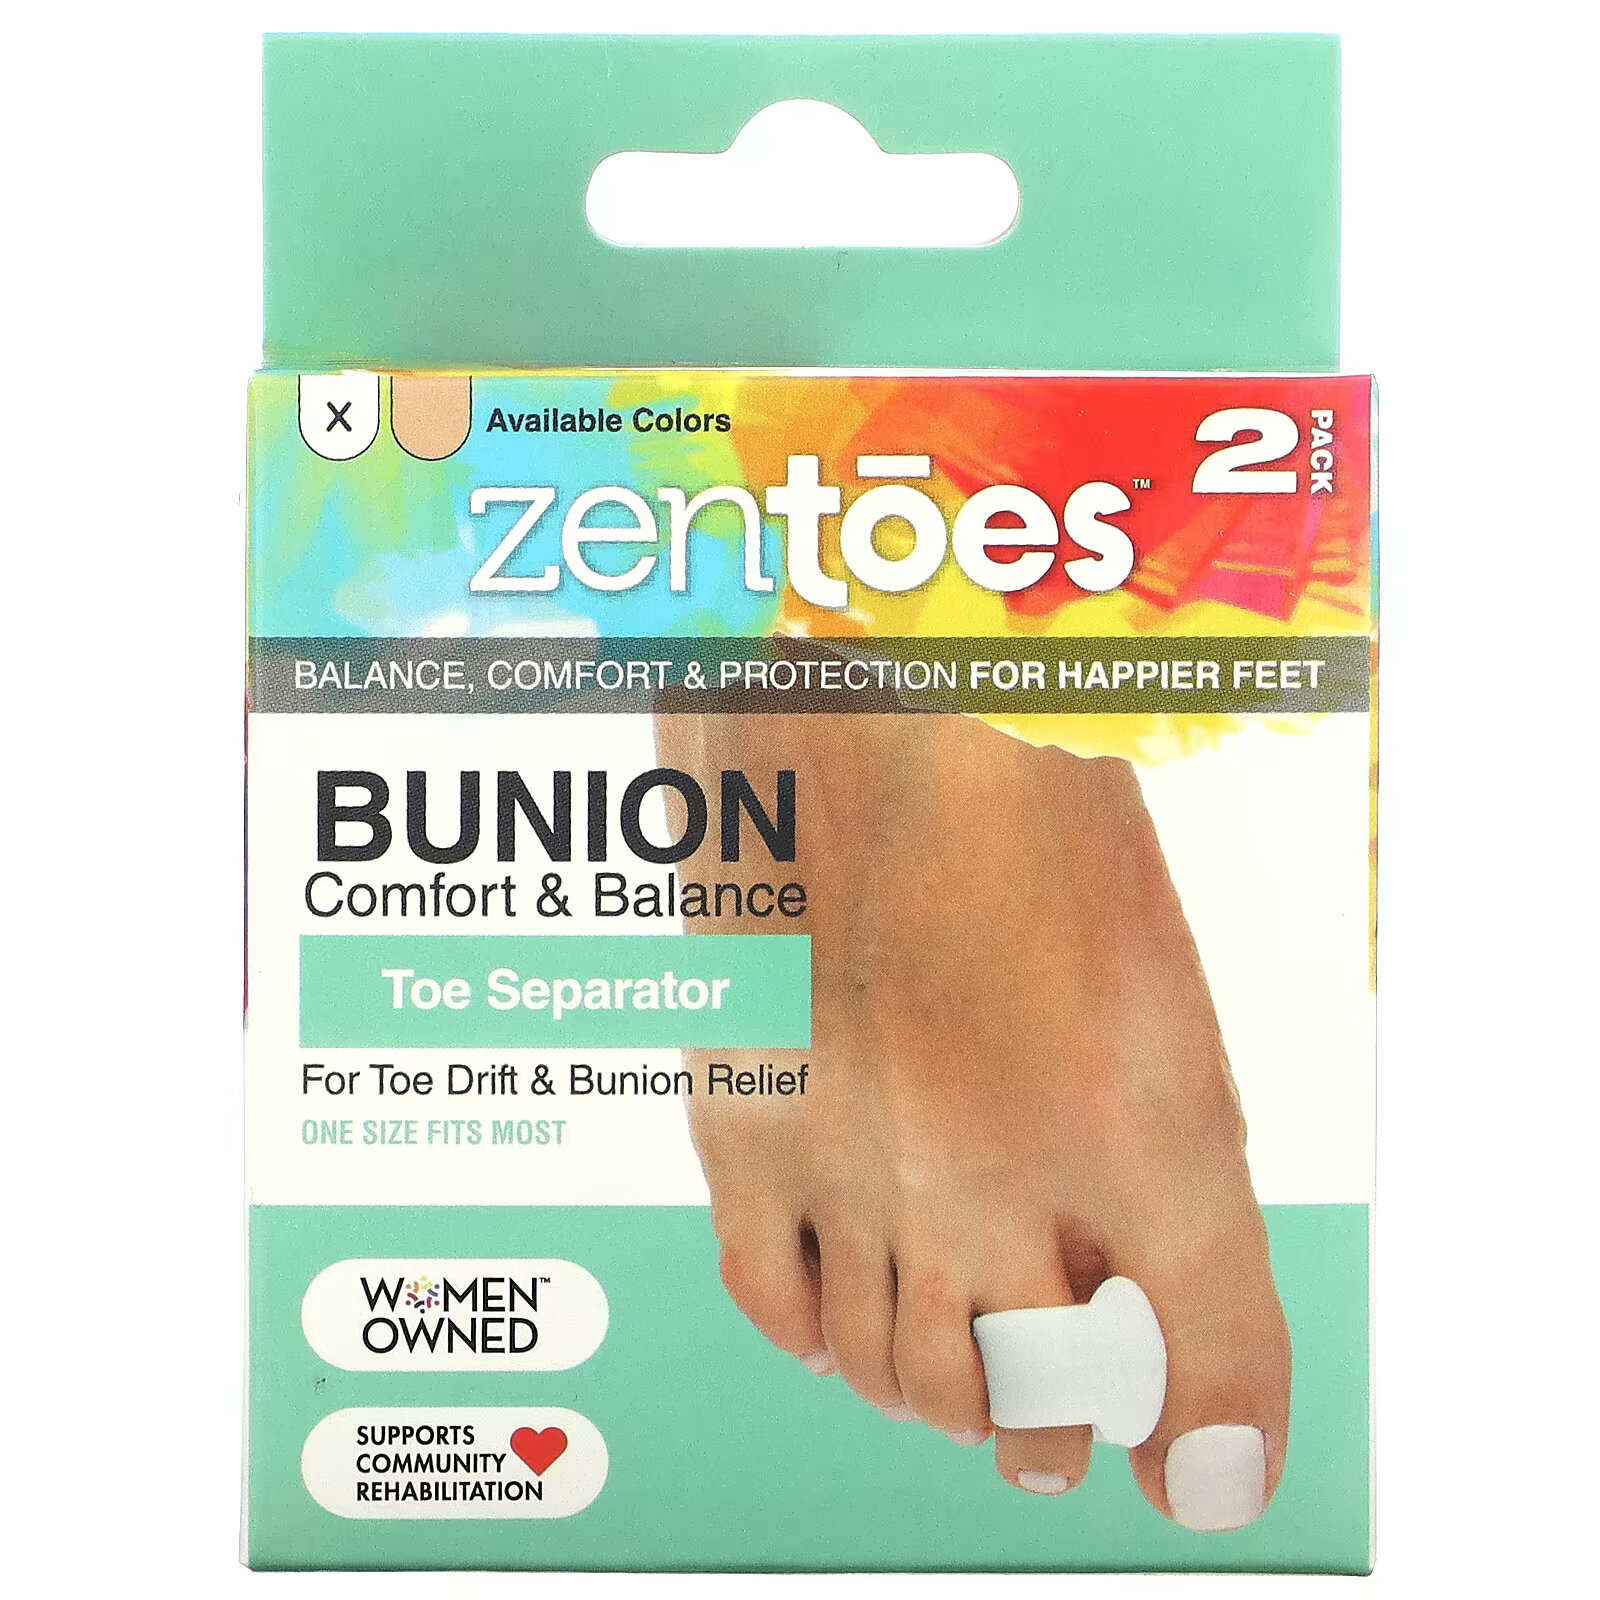 ZenToes, Toe Separator, Bunion Comfort & Balance, универсальный размер, 2 шт. В упаковке zentoes toe separator bunion comfort